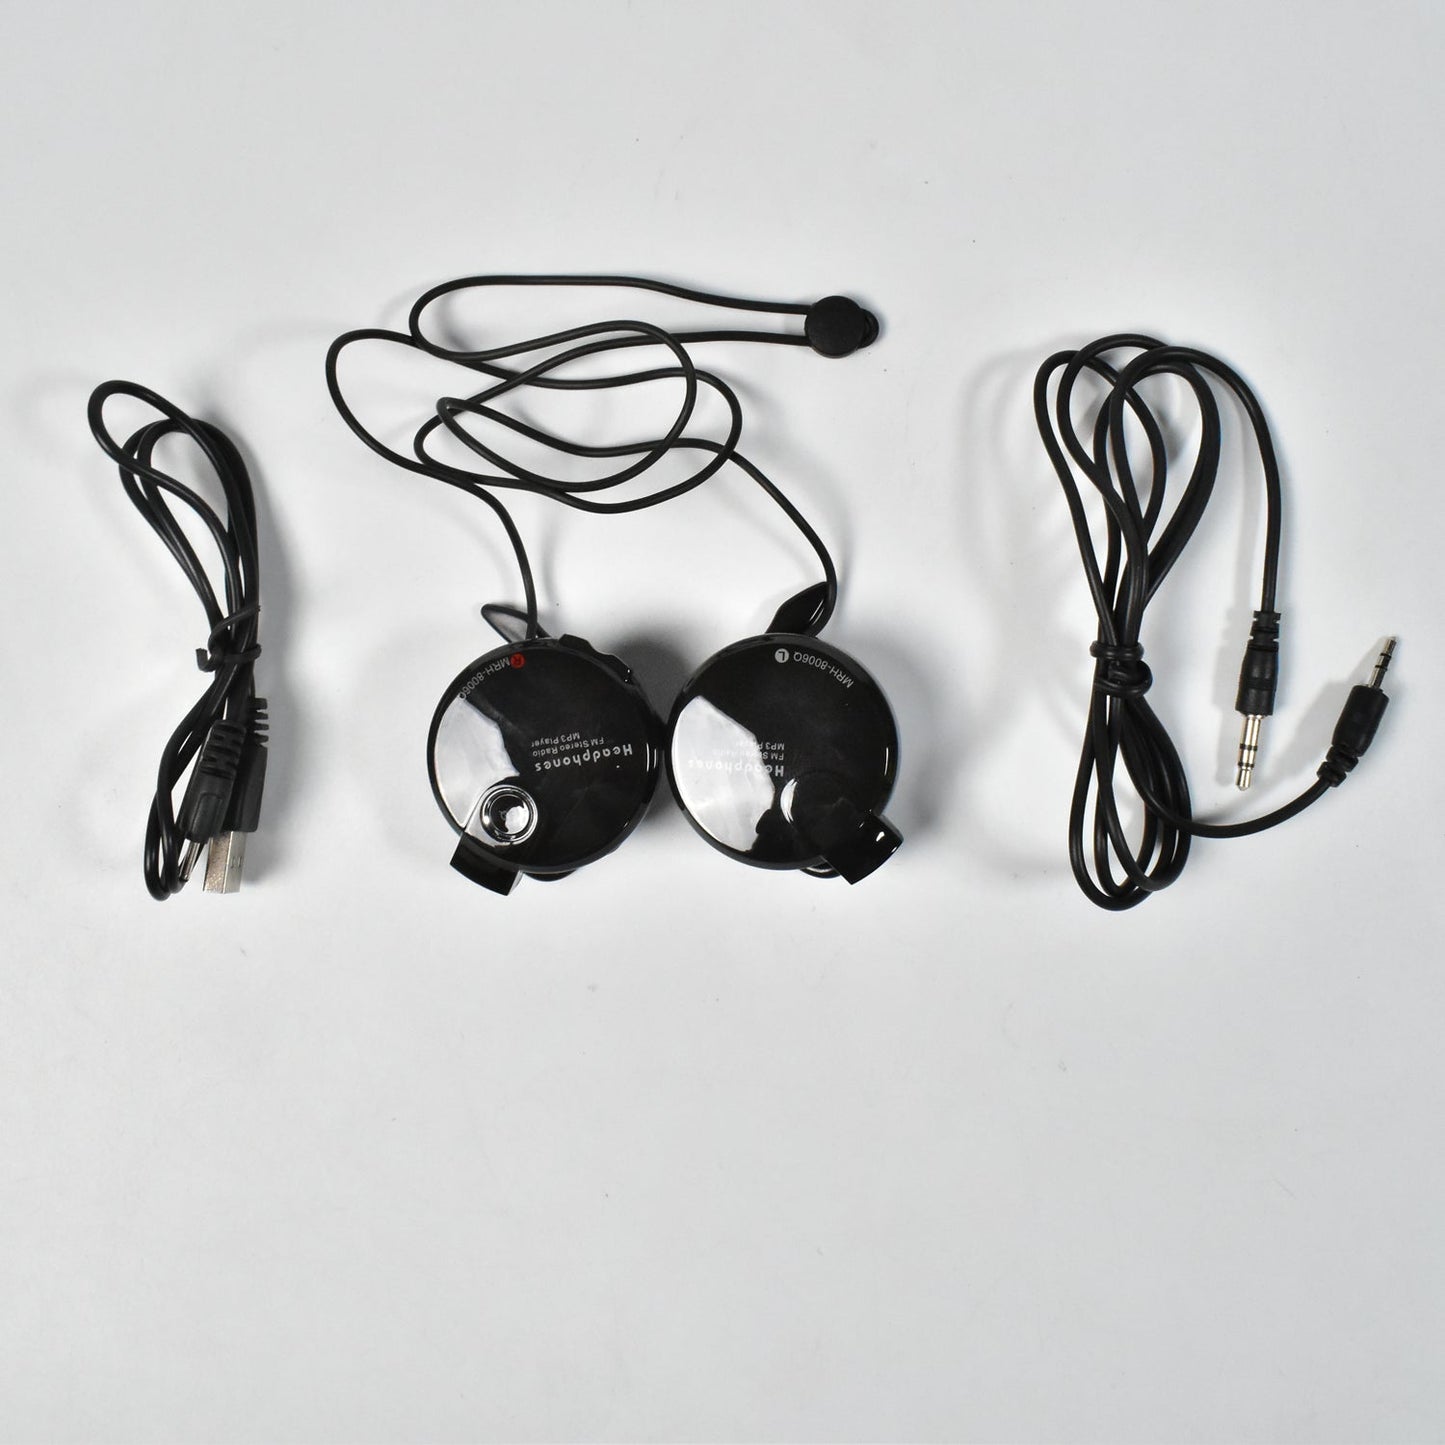 6392 Fold able Stereo Headphones for Mobiles, DJ Style High-Performance Headphones, Wired Headphones with Mic On-Ear Headphones JK Trends